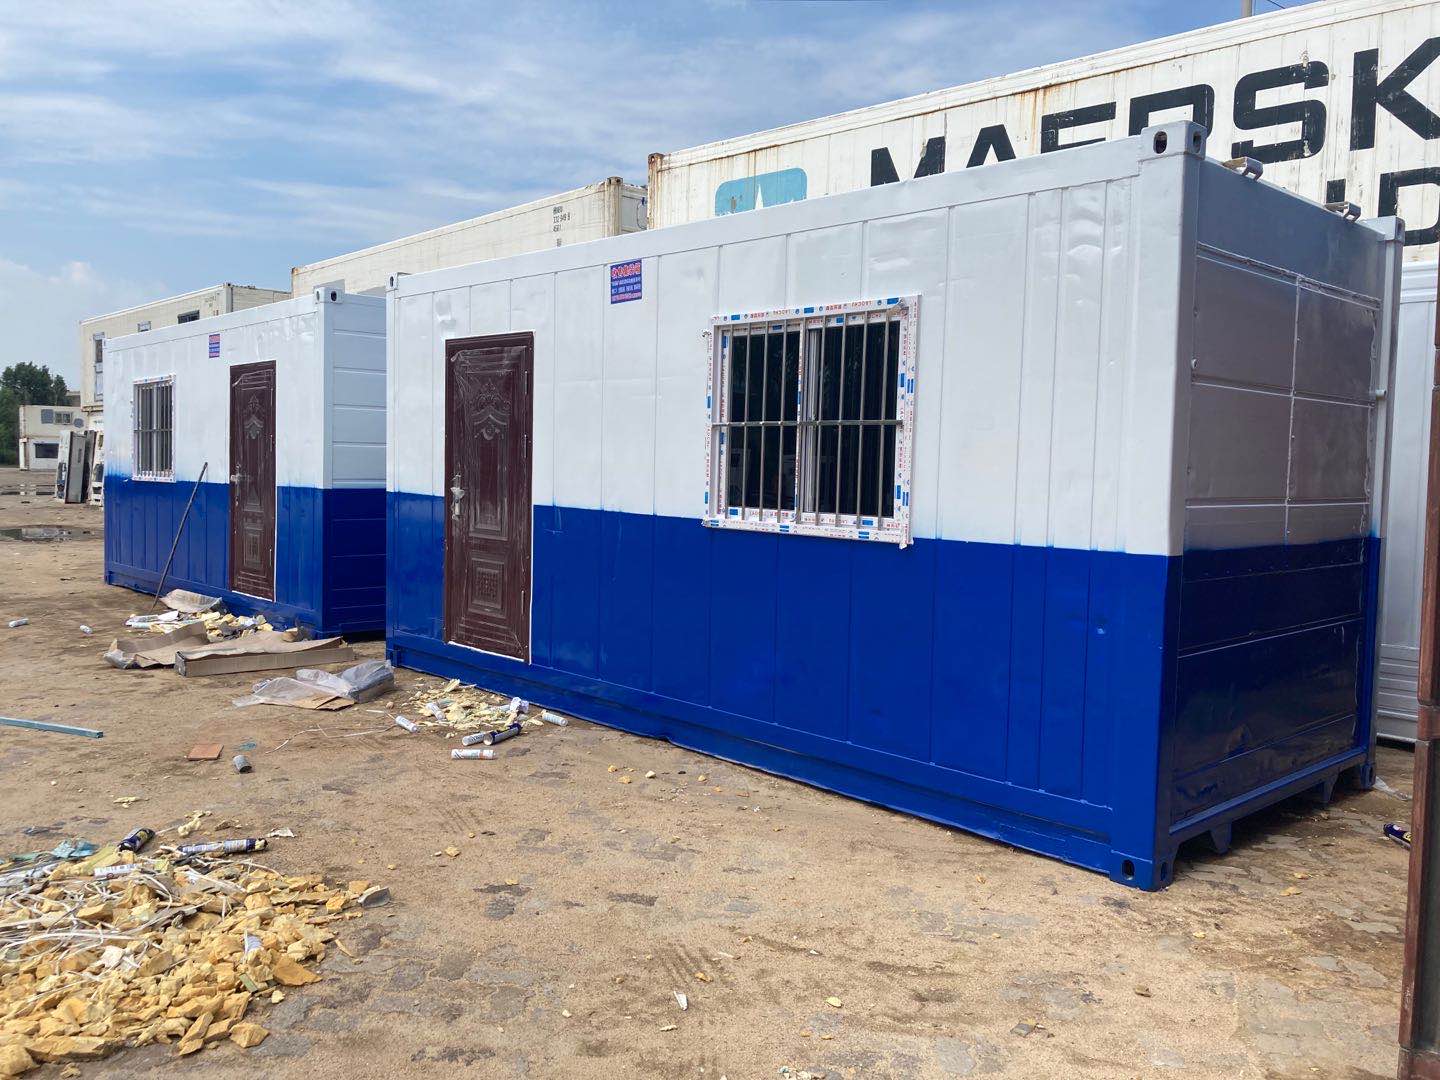 青岛市低价出售回收二手集装箱6米12米厂家低价出售回收二手集装箱6米12米冷藏集装箱海运集装箱开顶箱框架箱等